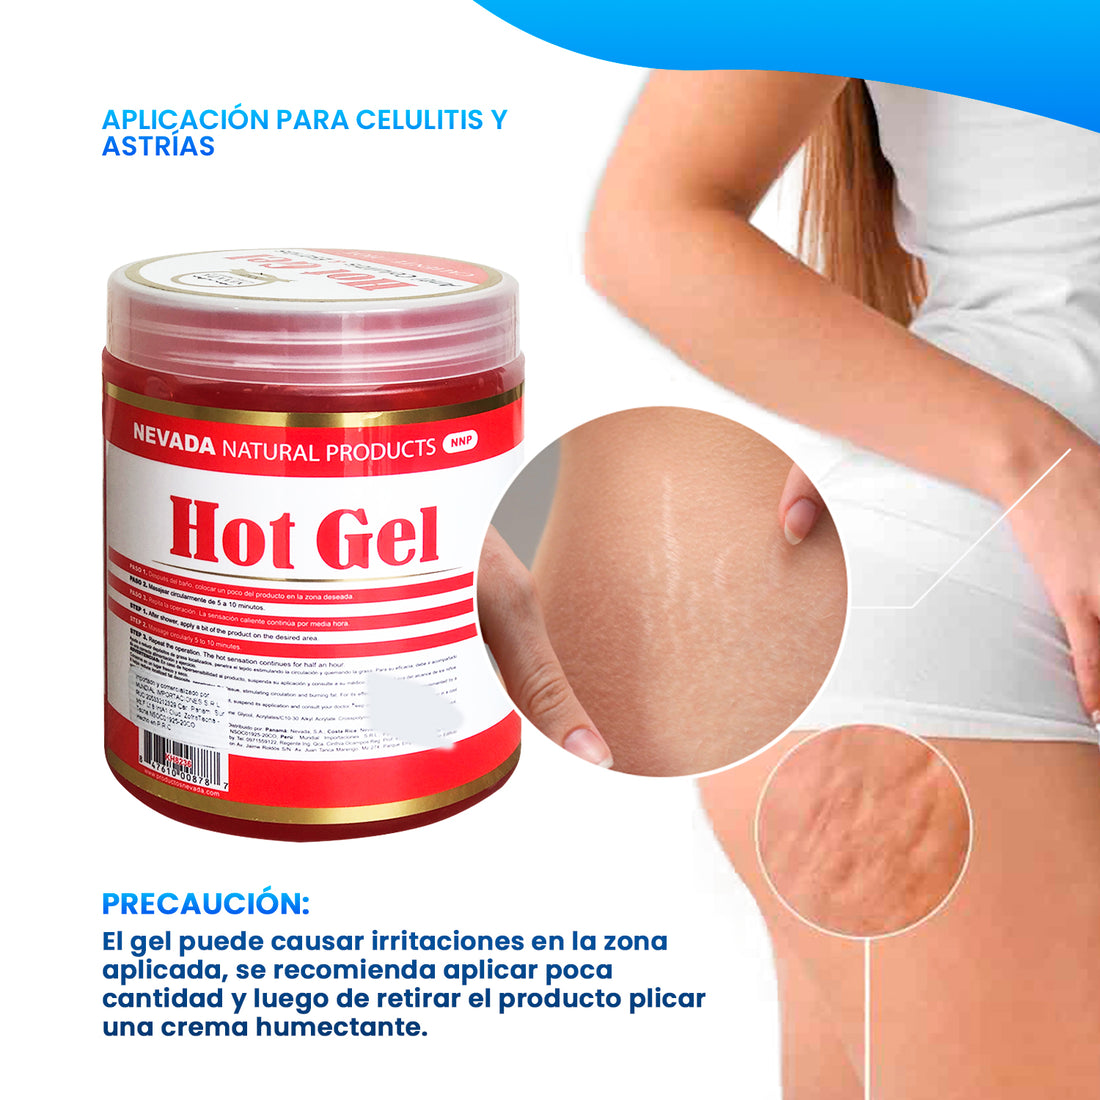 Hot Gel - Crema Anti Celulitis &amp; Estrias